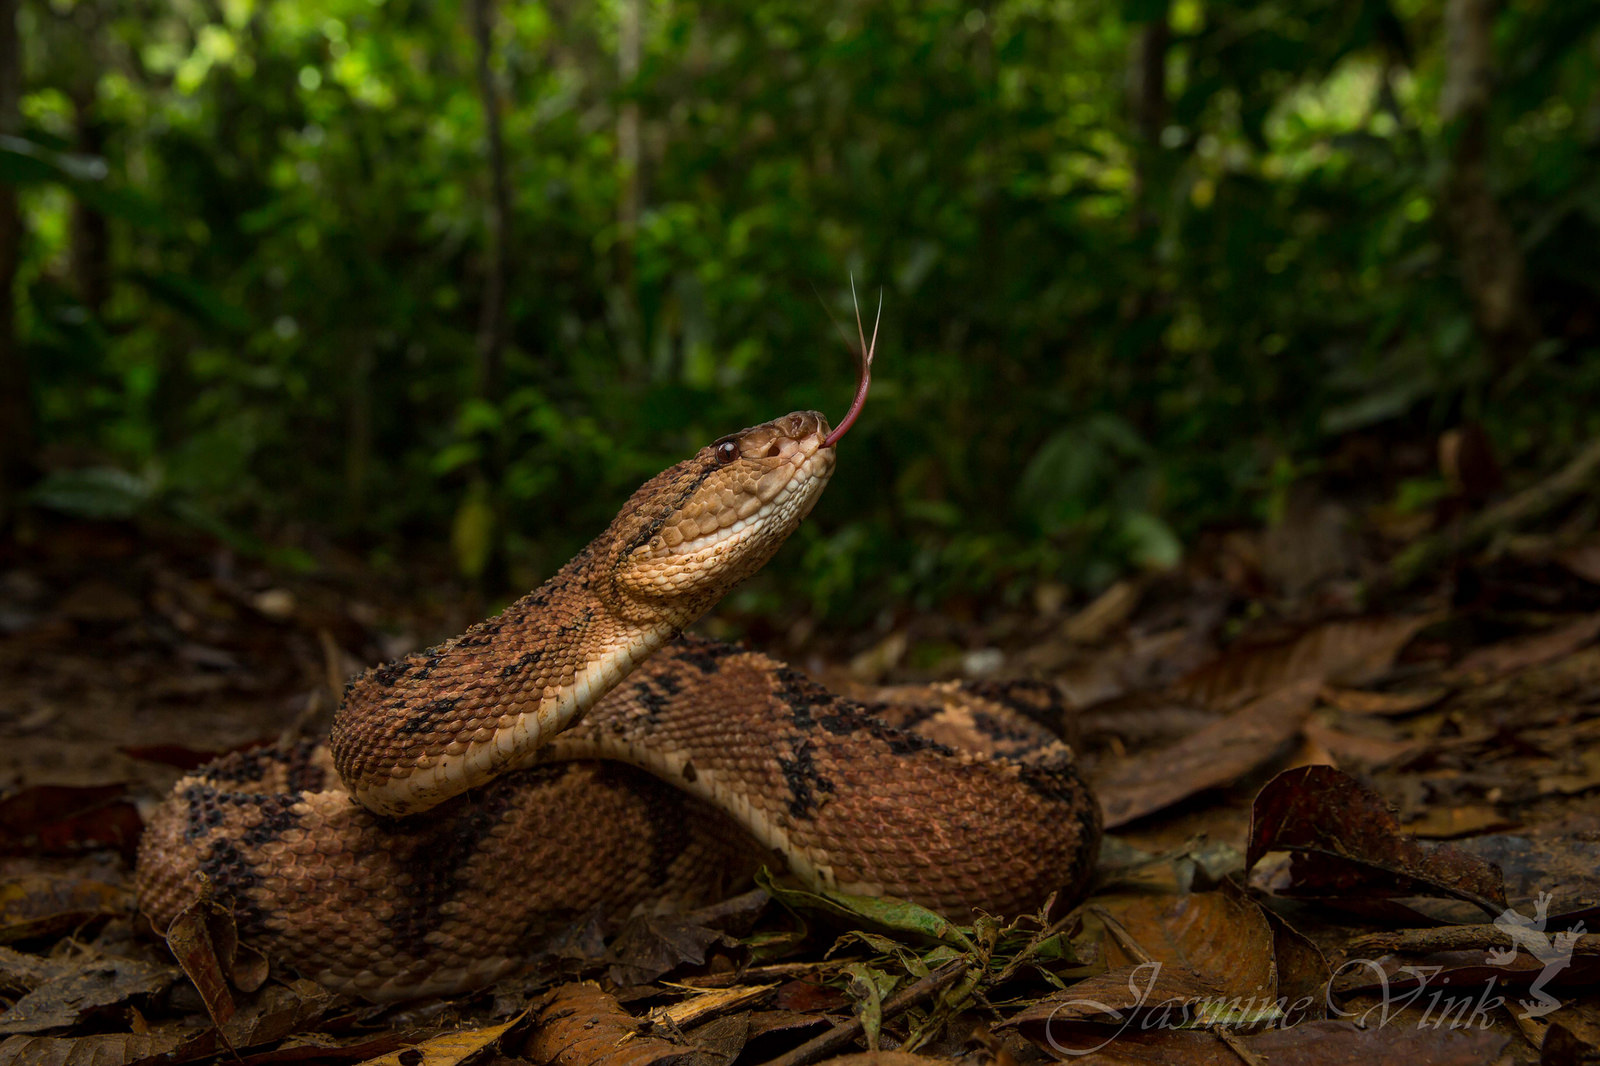 Колумбийский бушмейстер (Lachesis acrochorda). Одна из редких змей и самая большая из гадюковых. 